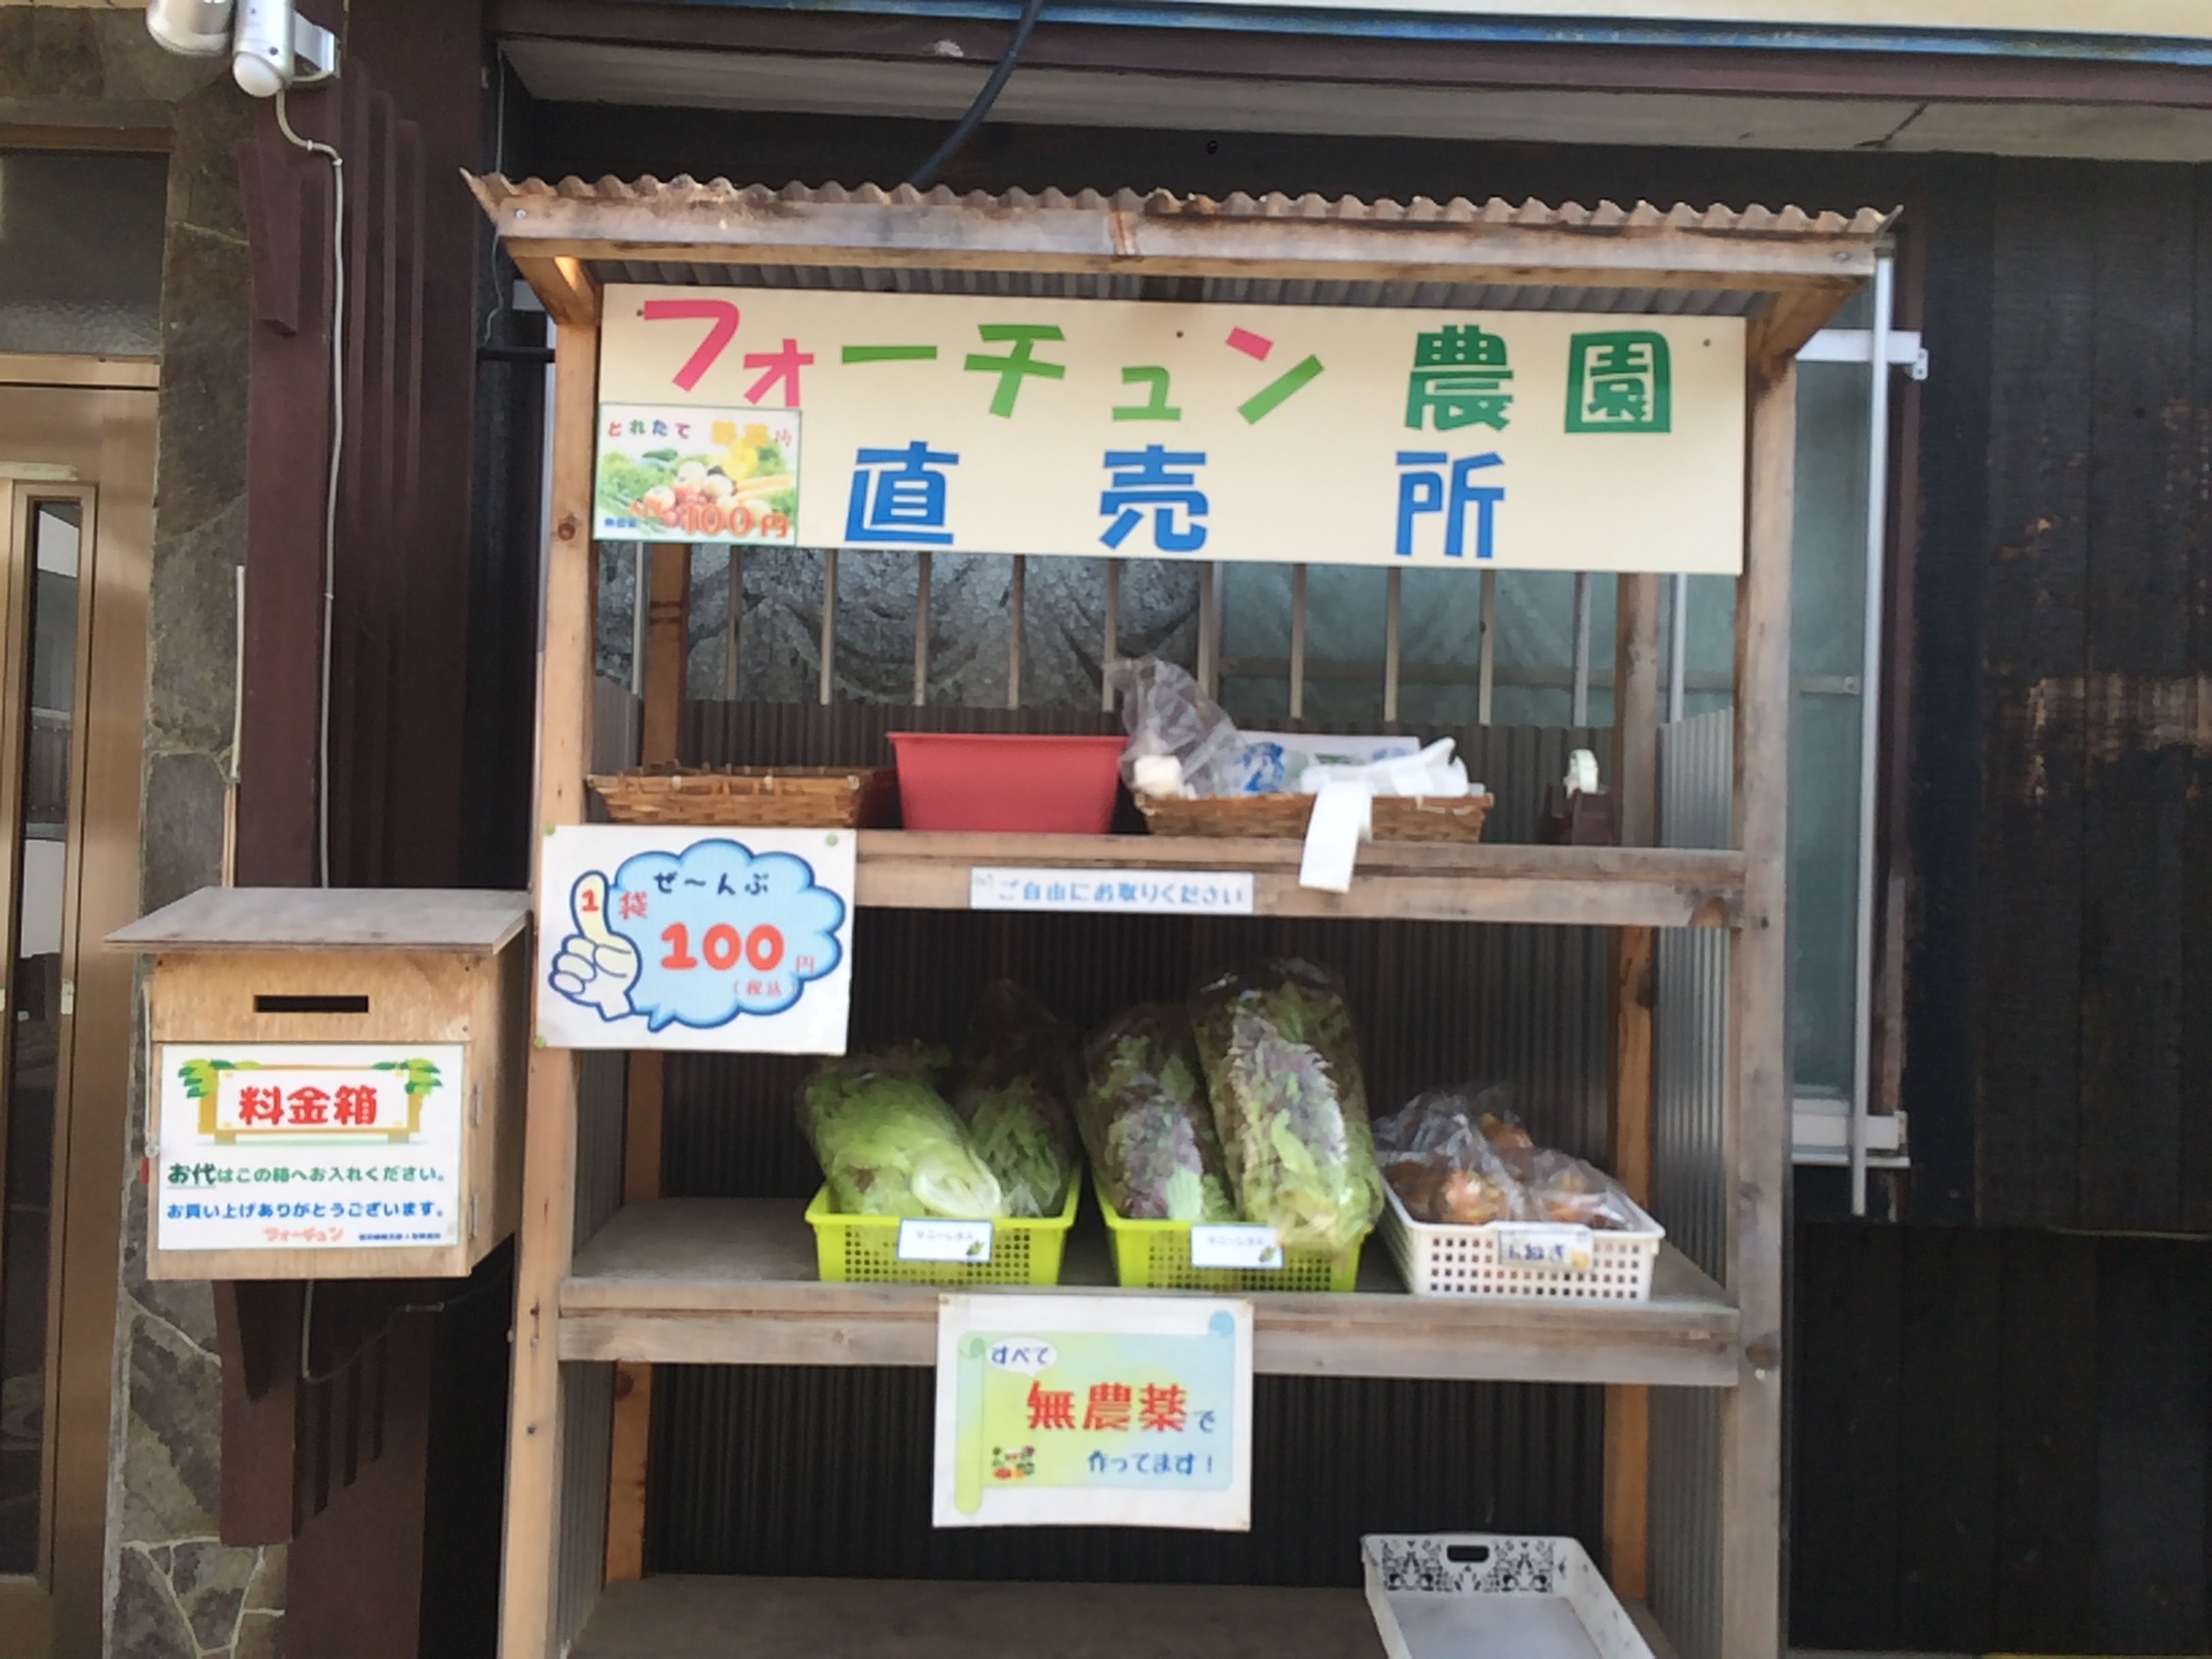 日替わりの野菜が買える 無人販売 フォーチュン農園直売所 に行ってきたよ 前編 Kitonaru きとなる